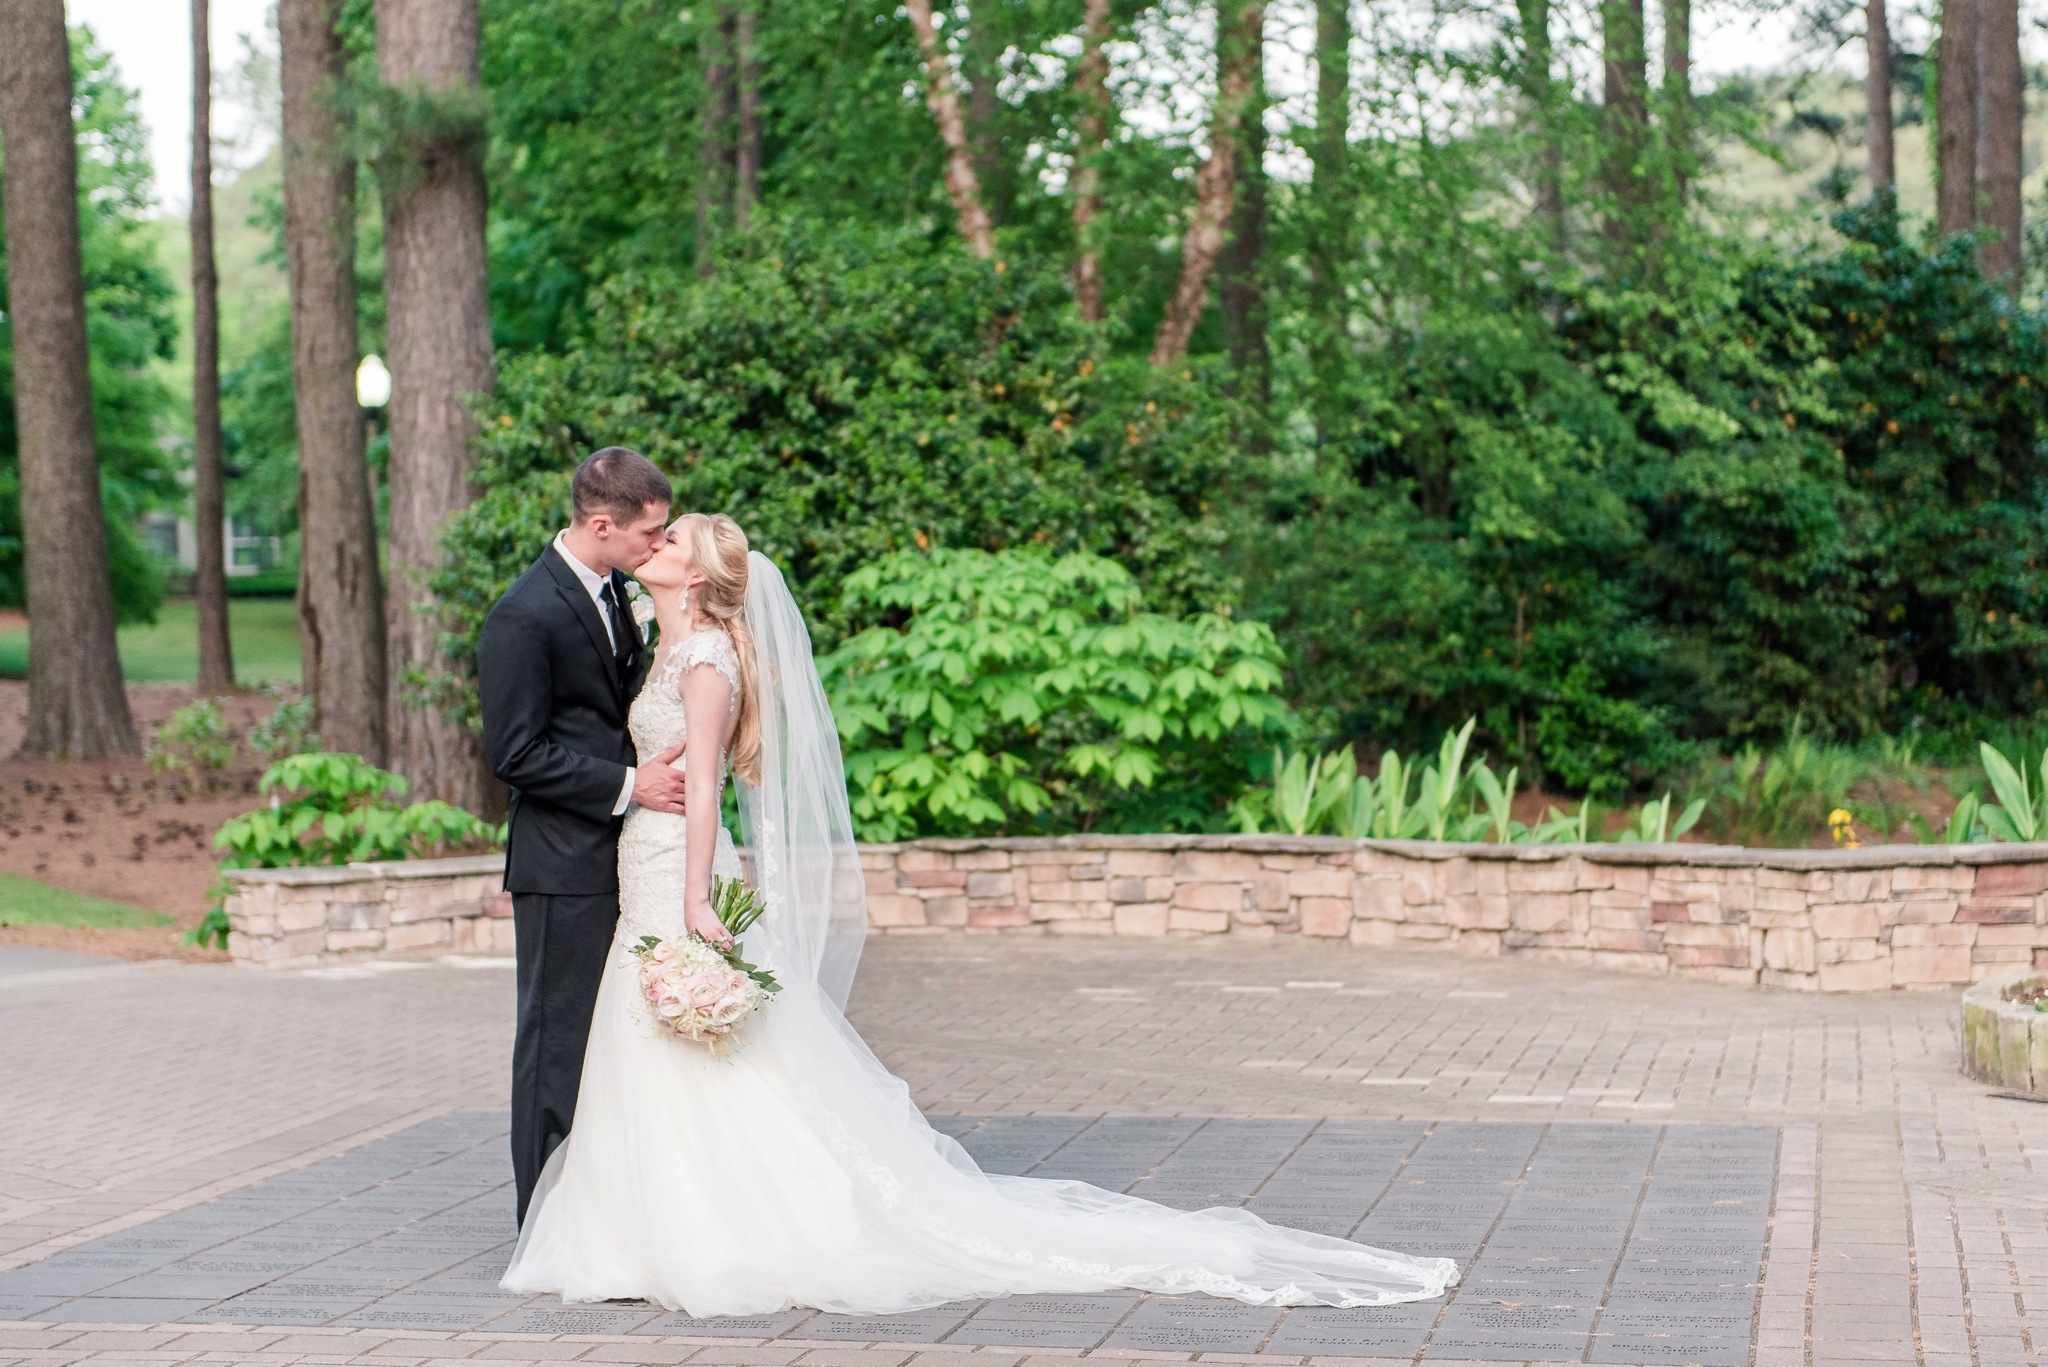 Aldridge Garden Hoover Alabama Blush Spring Wedding | Birmingham Alabama Wedding Photographers_0042.jpg